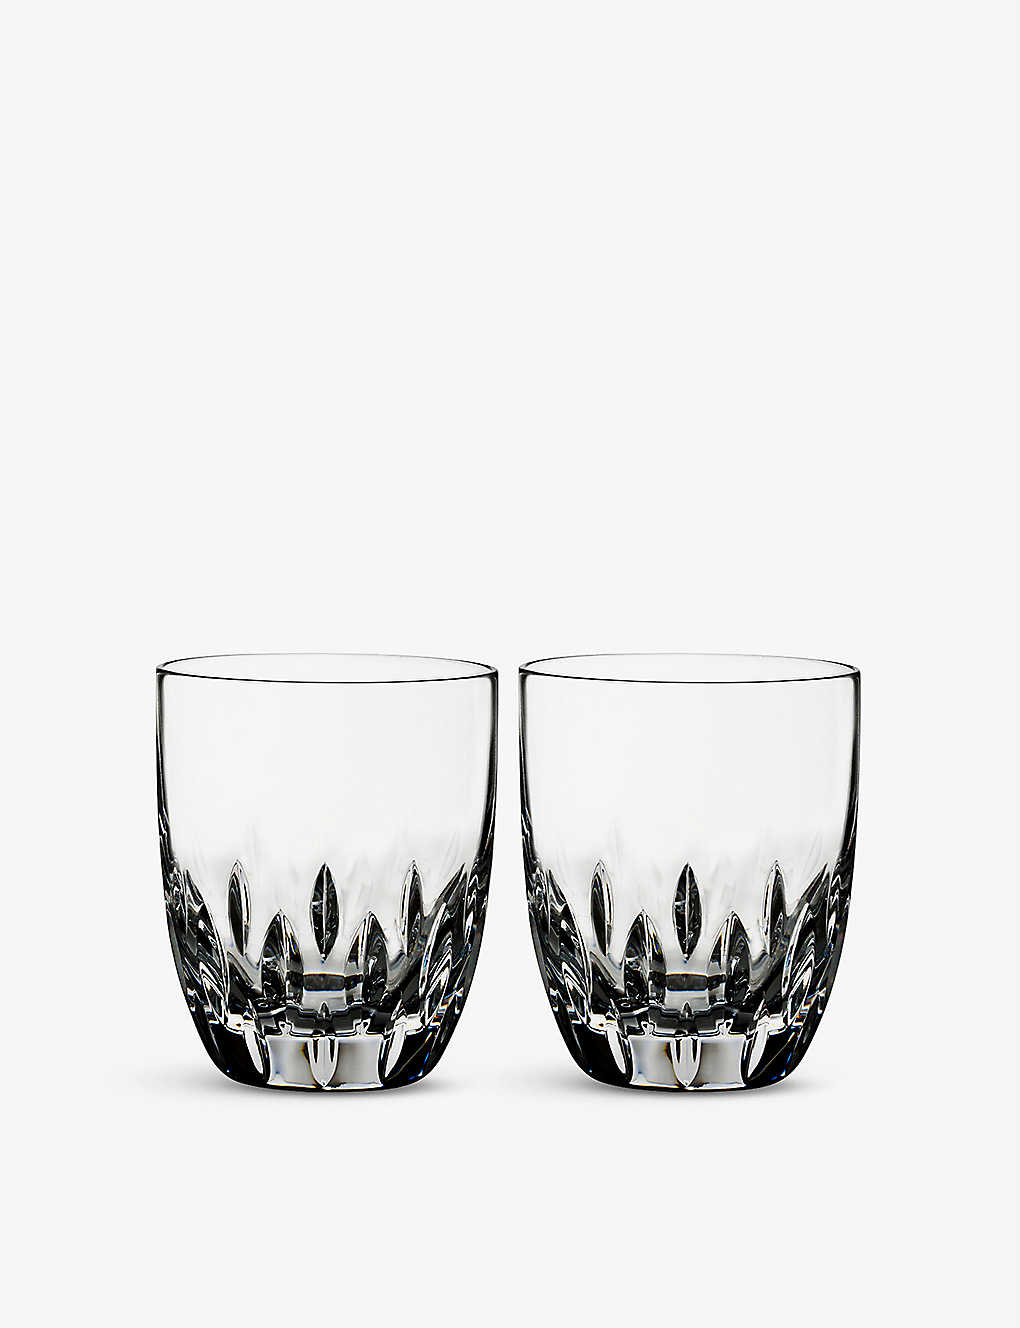 人気スポー新作 モデル着用 注目アイテム WATERFORD エニス クリスタル タンブラー グラス 2個セット Enis crystal tumbler glasses set of two kimloohuis.nl kimloohuis.nl